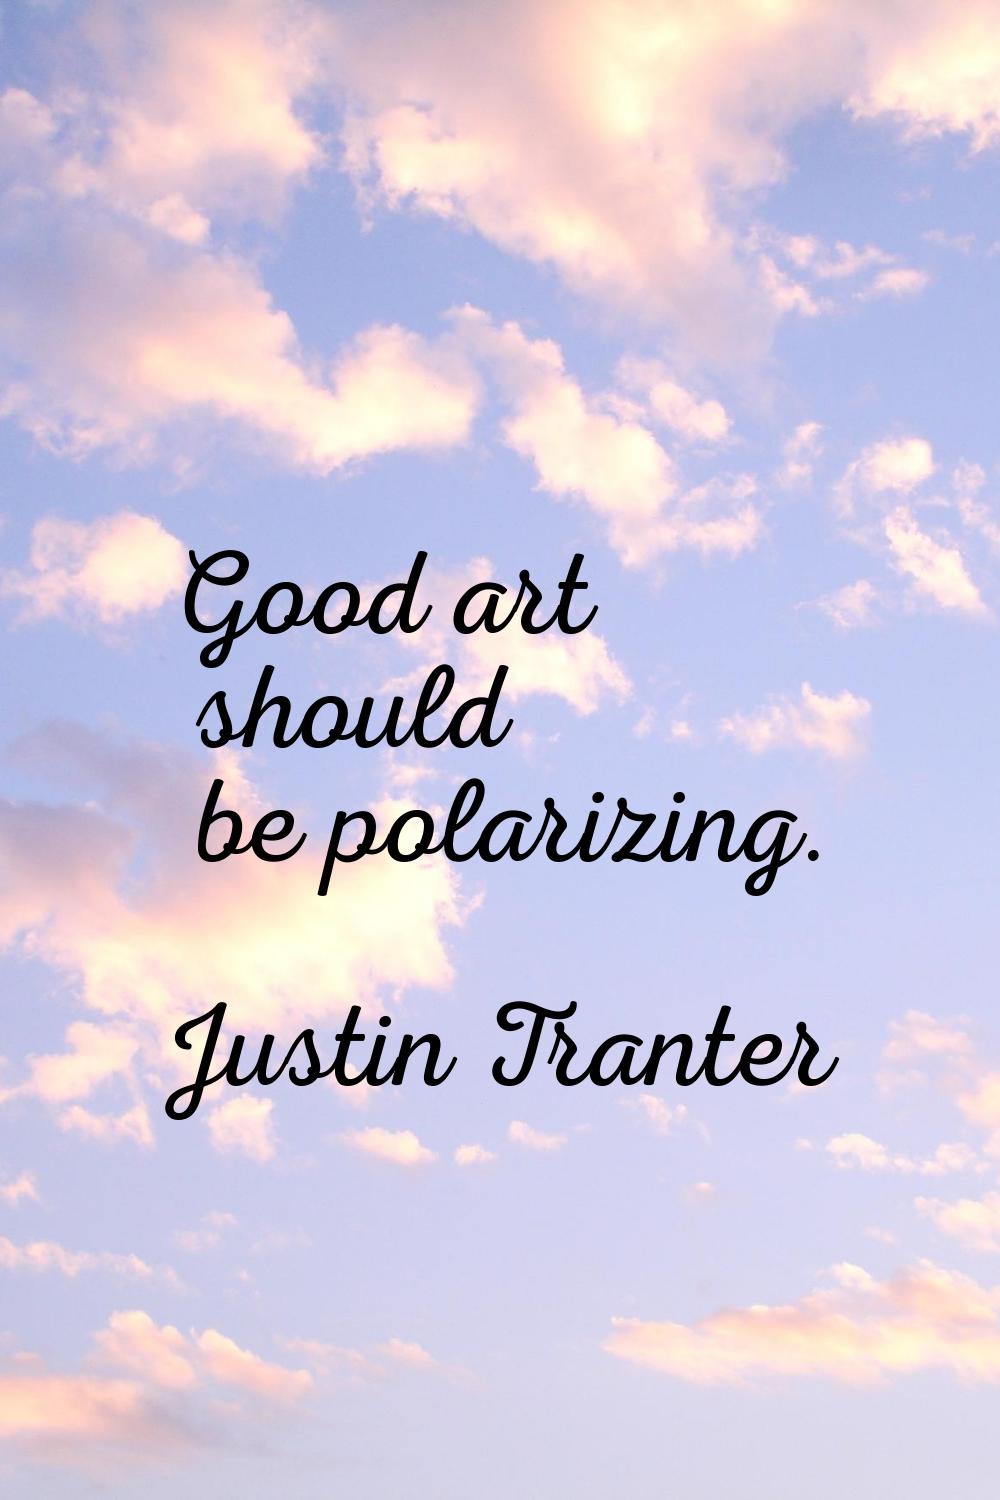 Good art should be polarizing.